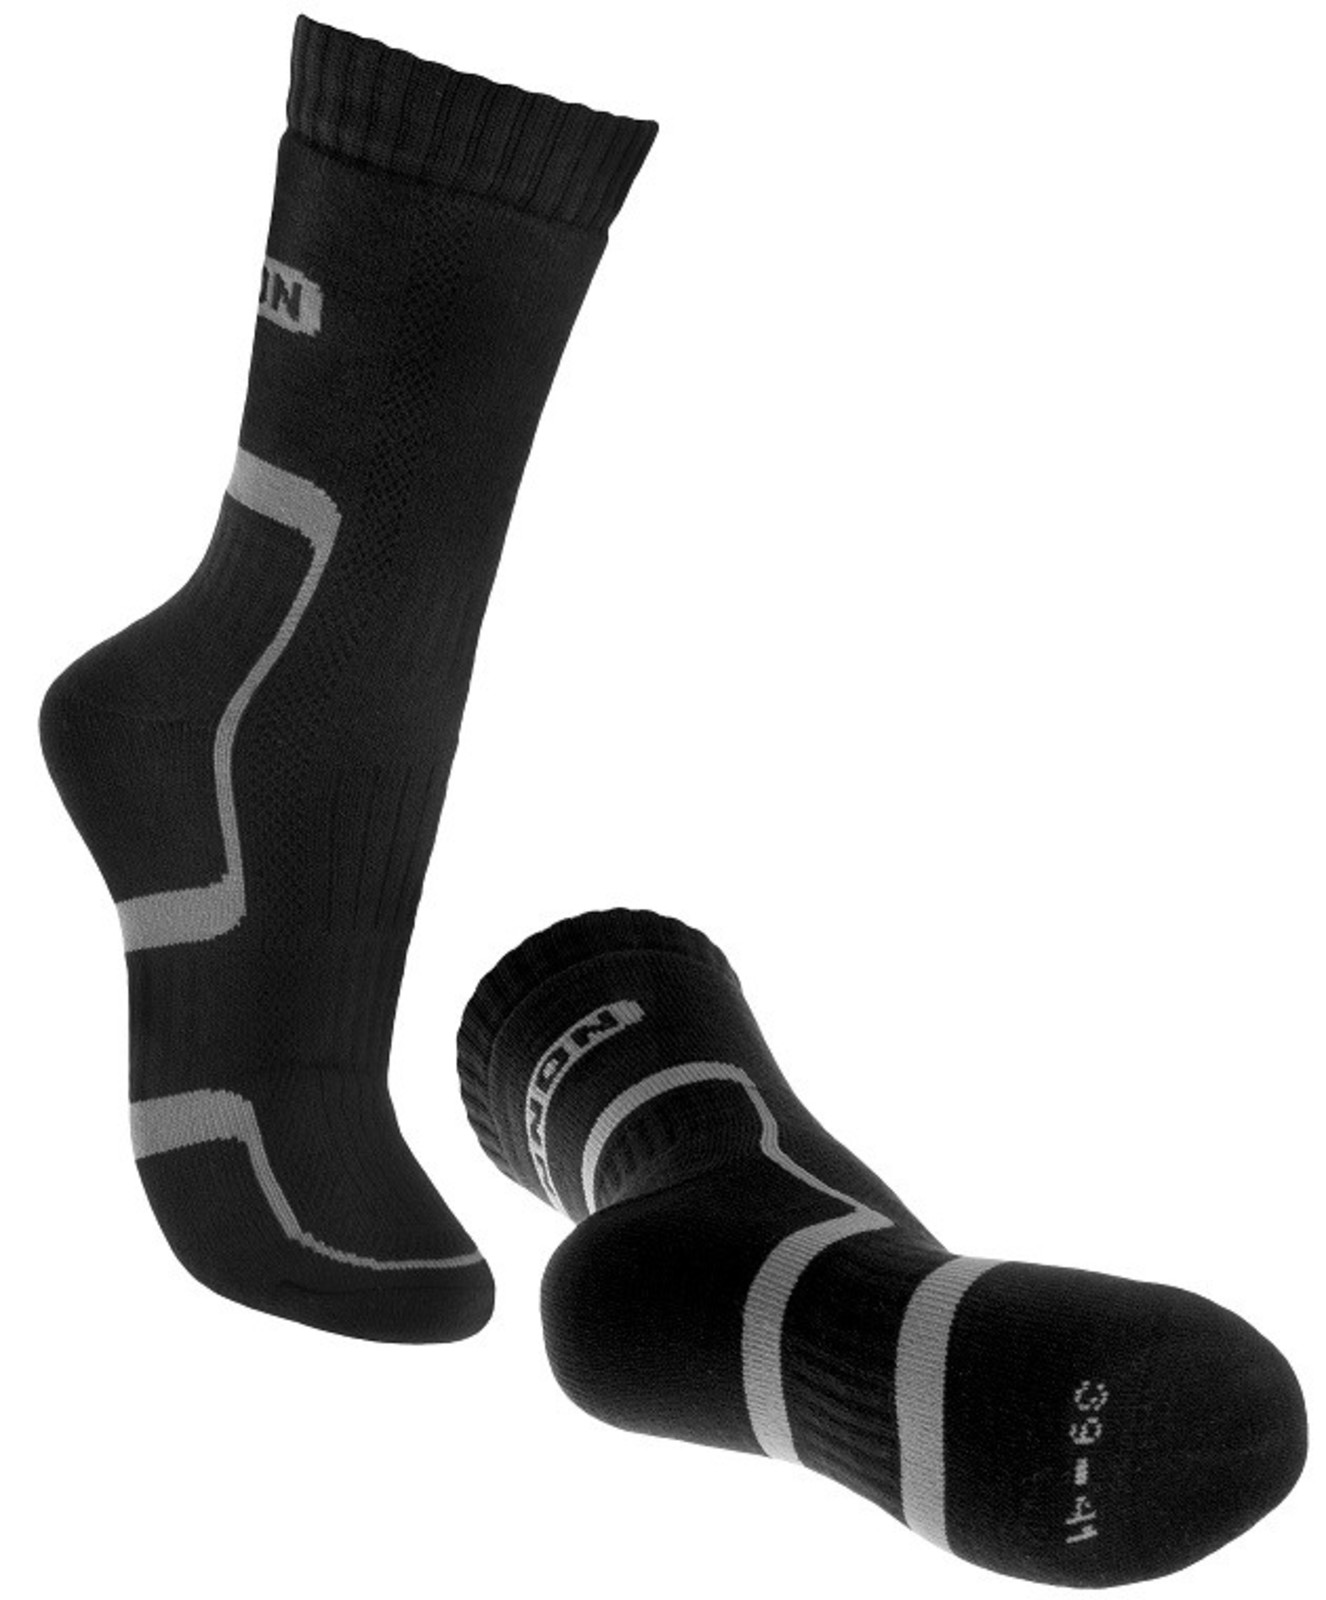 Ponožky Bennon Trek  - veľkosť: 39-41, farba: sivá/čierna